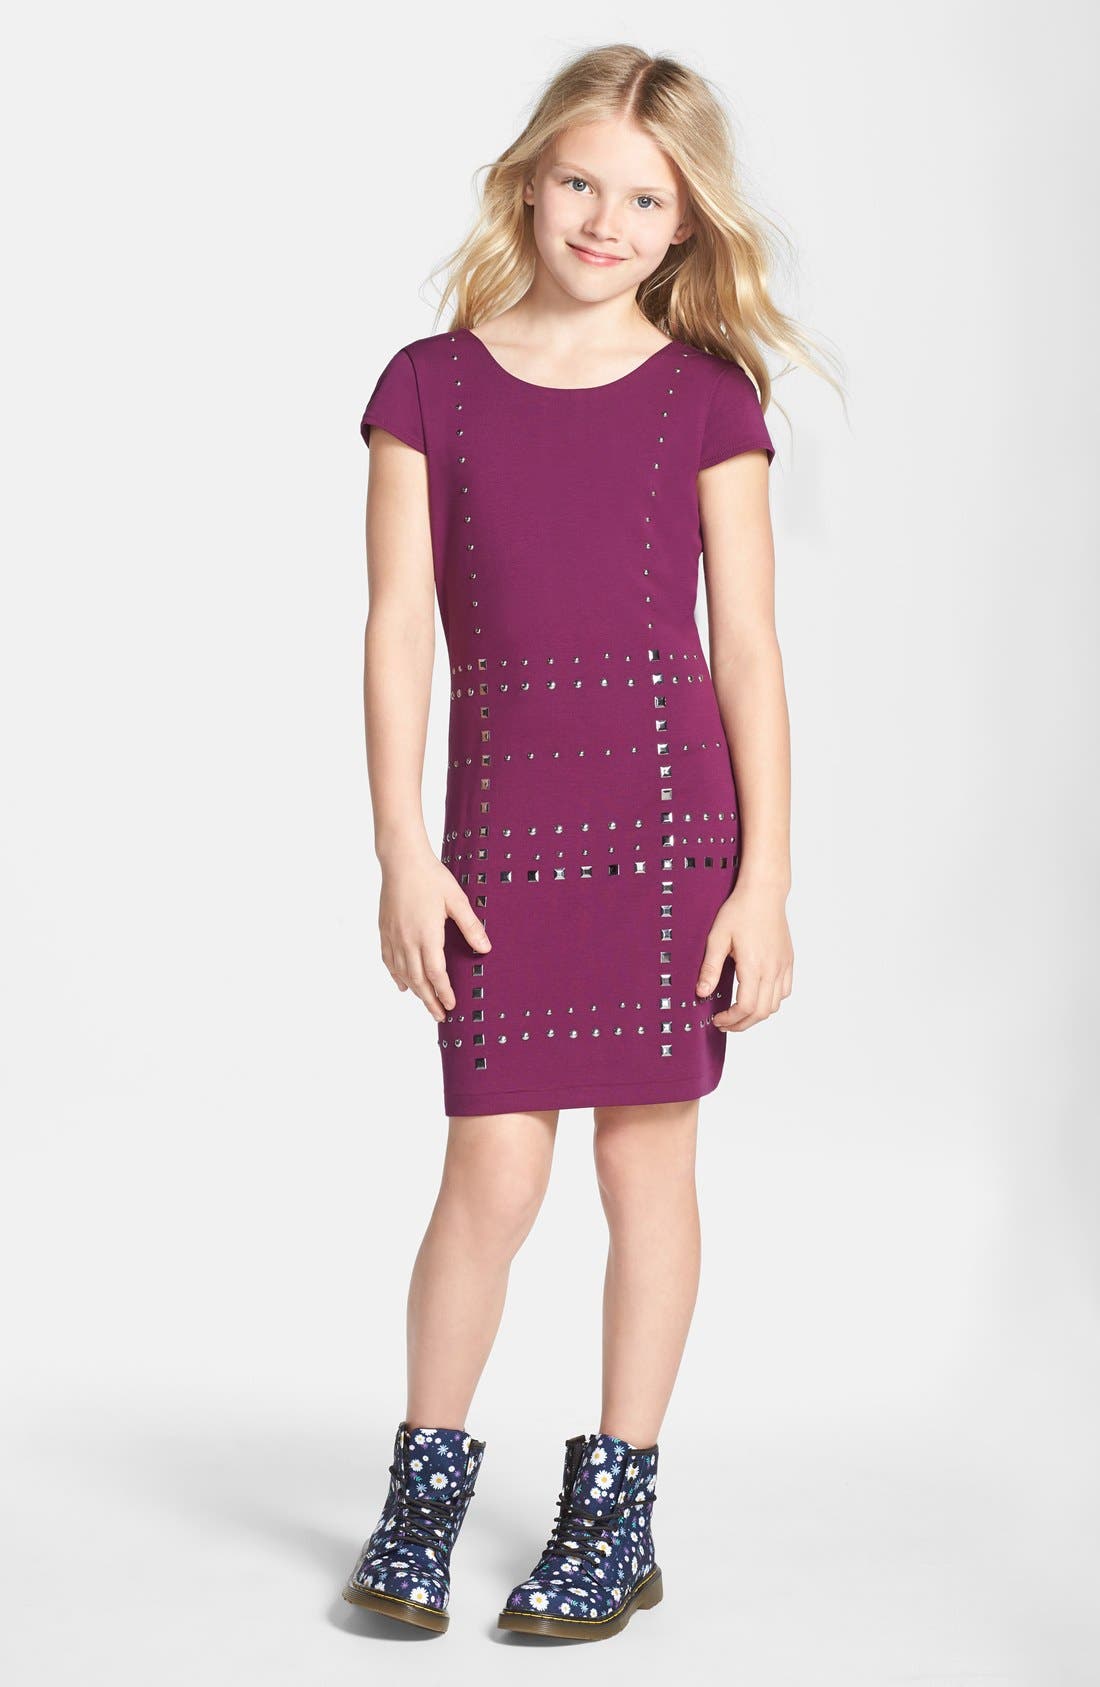 nicole miller purple dress